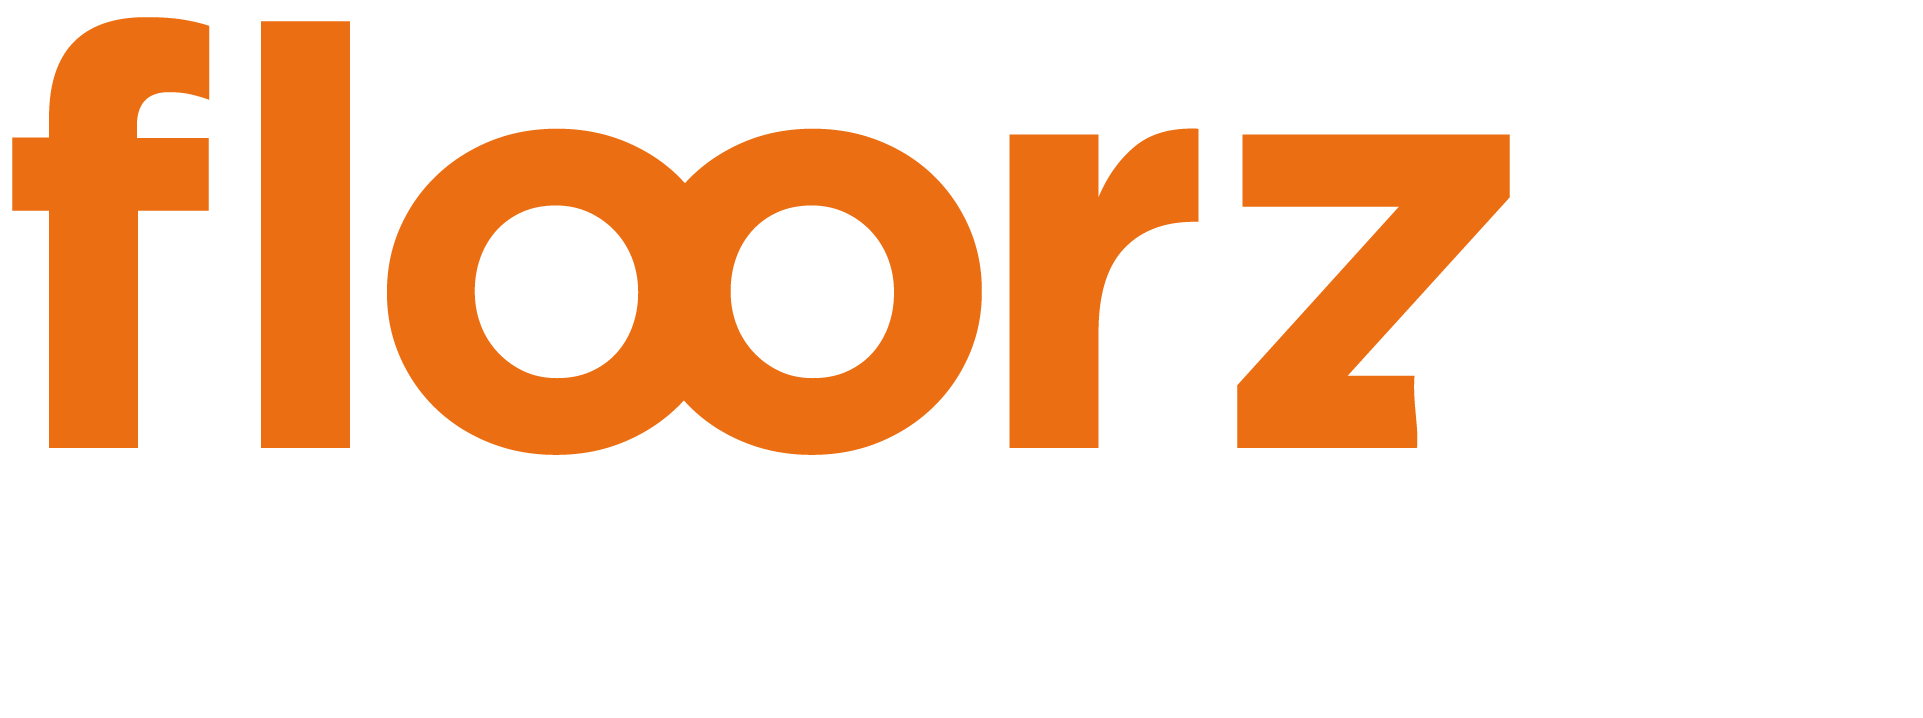 Floorz by Tropical Woods - Showroom de parquets